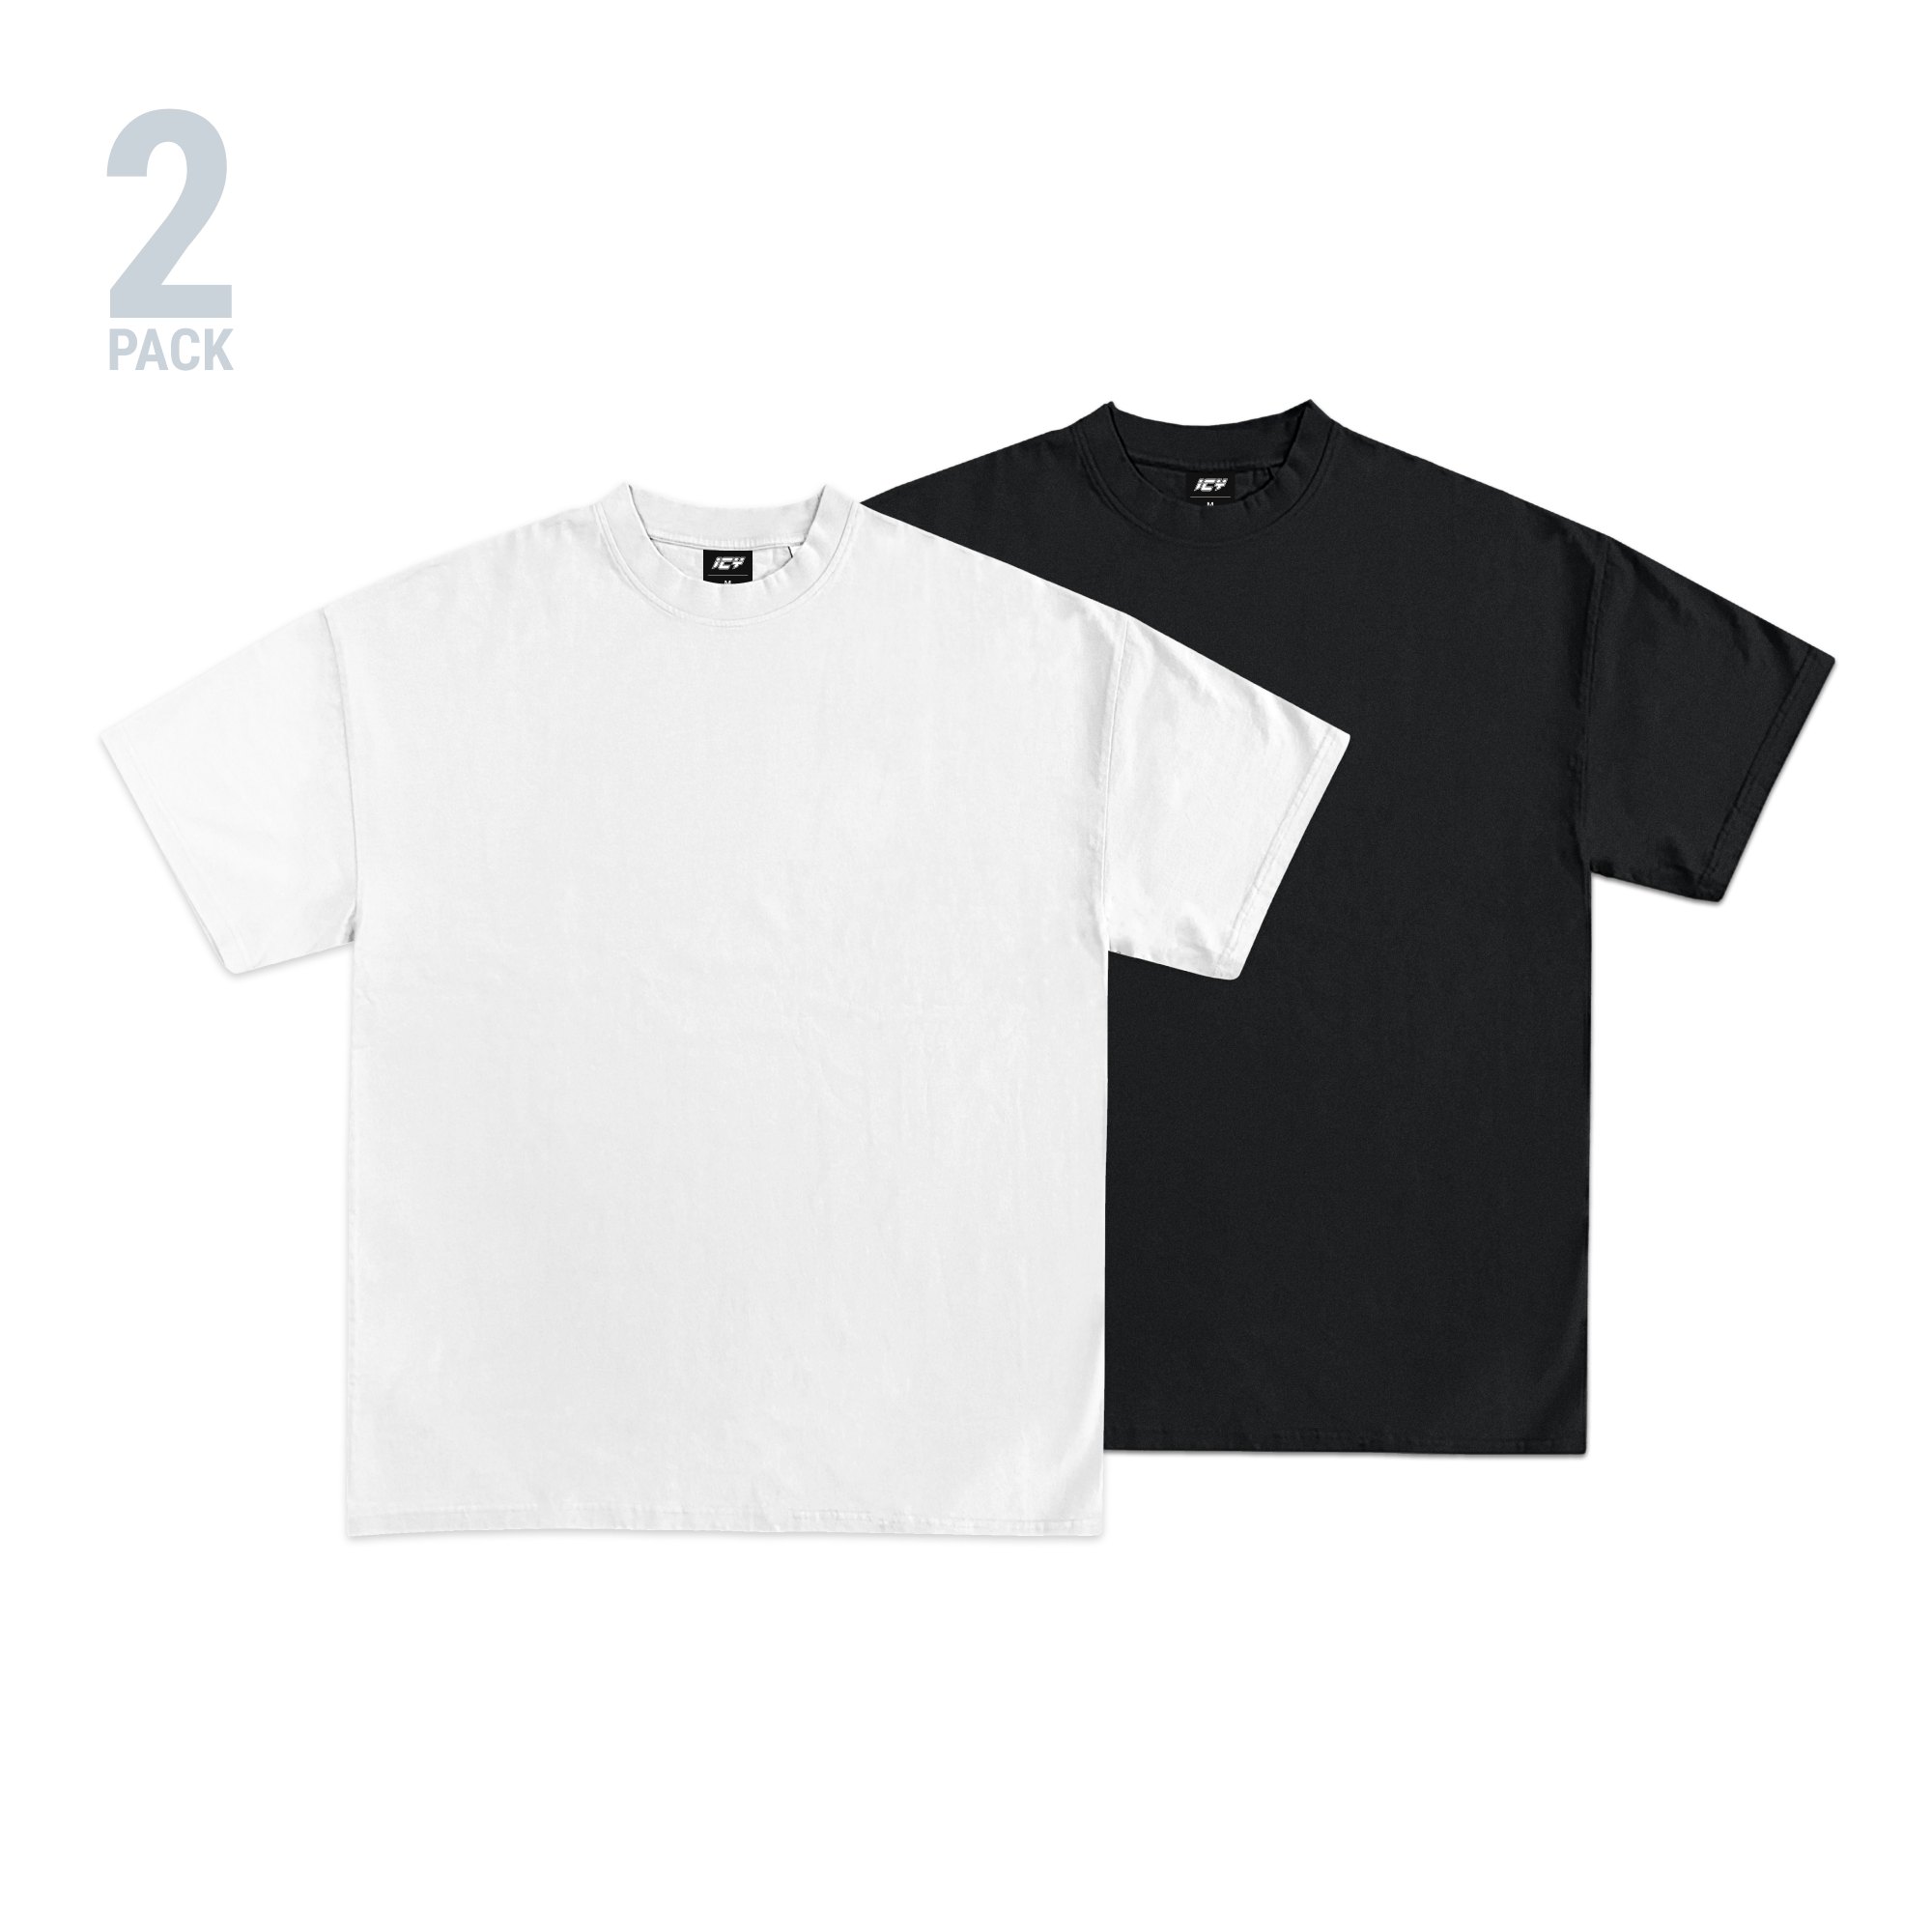 Icy Men's 2-Pack Heavyweight T-Shirt (Black, White)